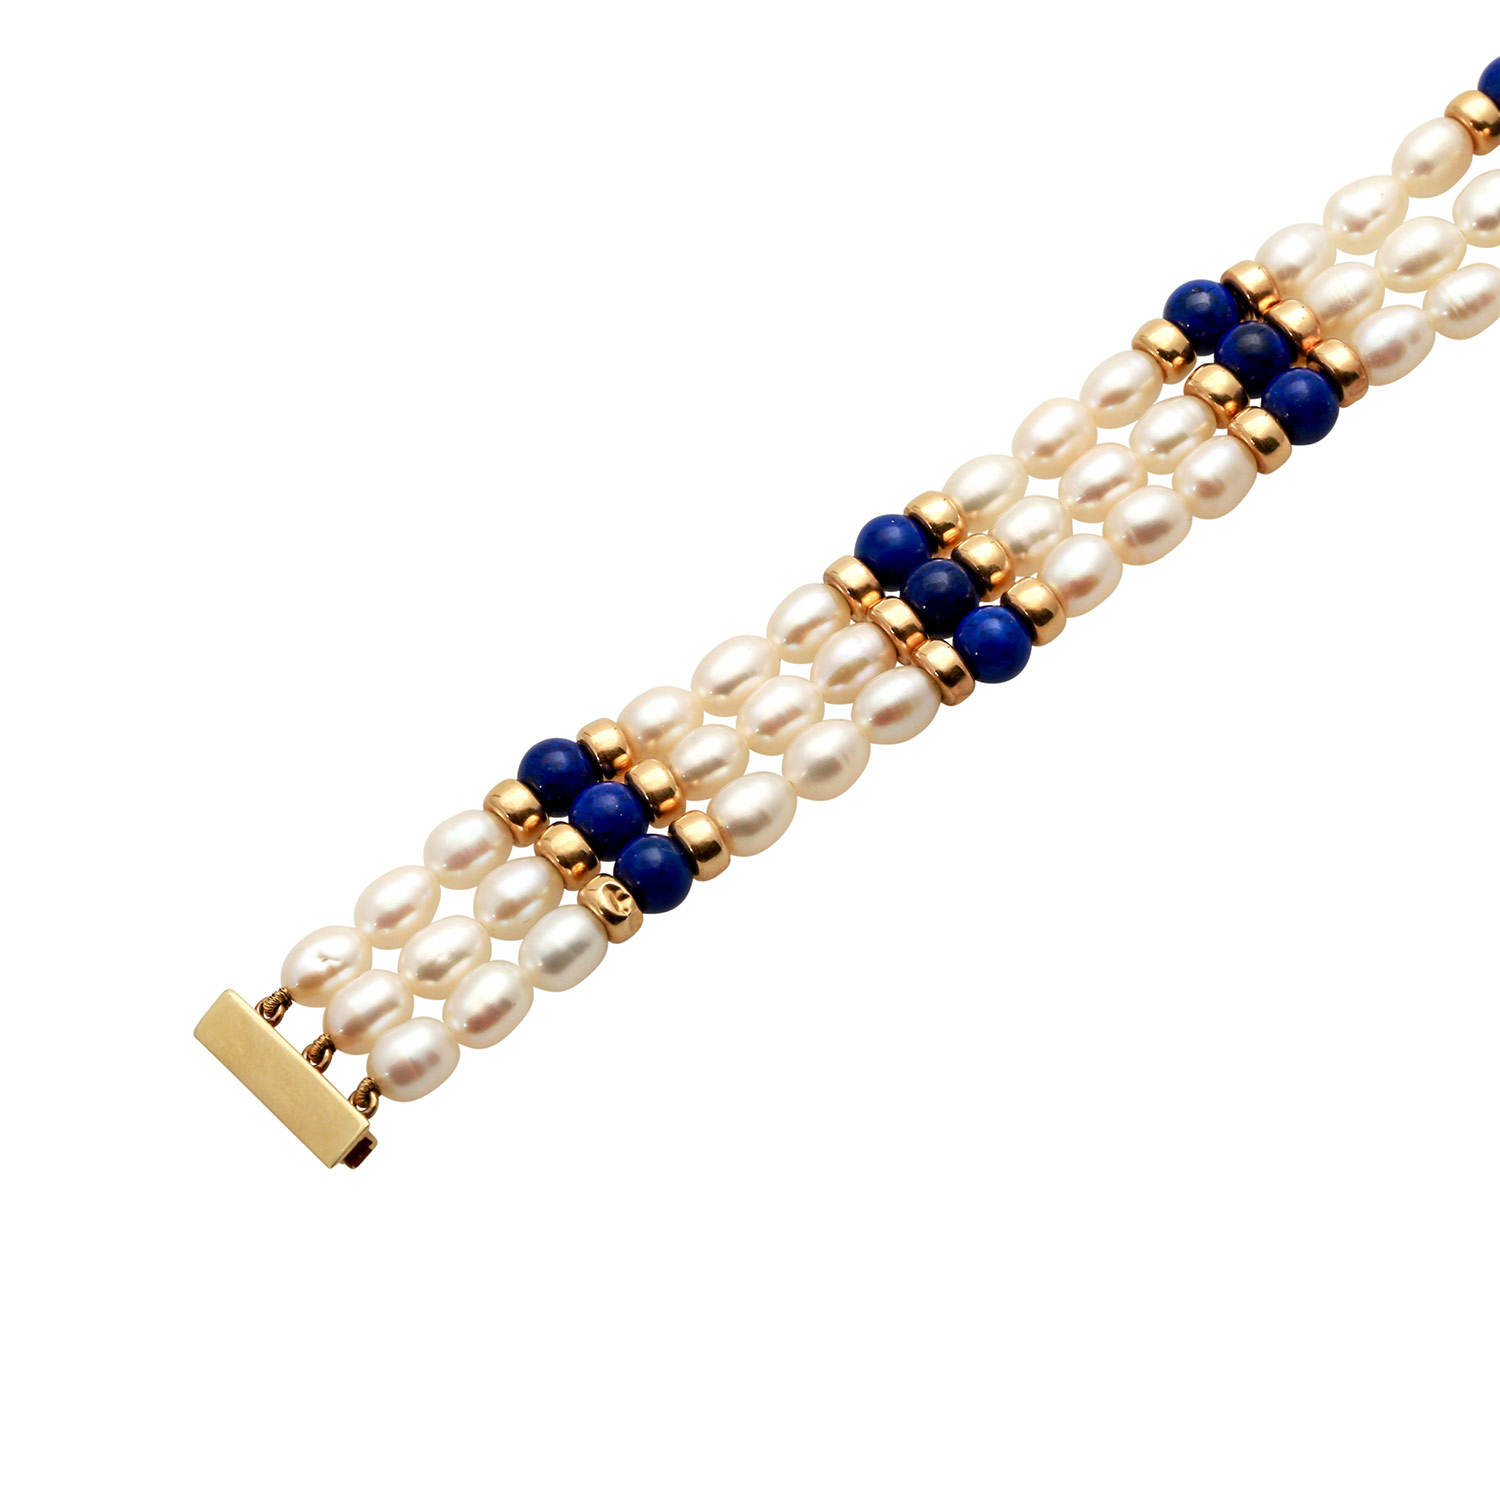 Armband aus Zuchtperlen, Lapislazuliperlenund Goldrondellen, GG 14K, L: 18,5 cm, 3-reihig B: 1,5 cm, - Image 4 of 4